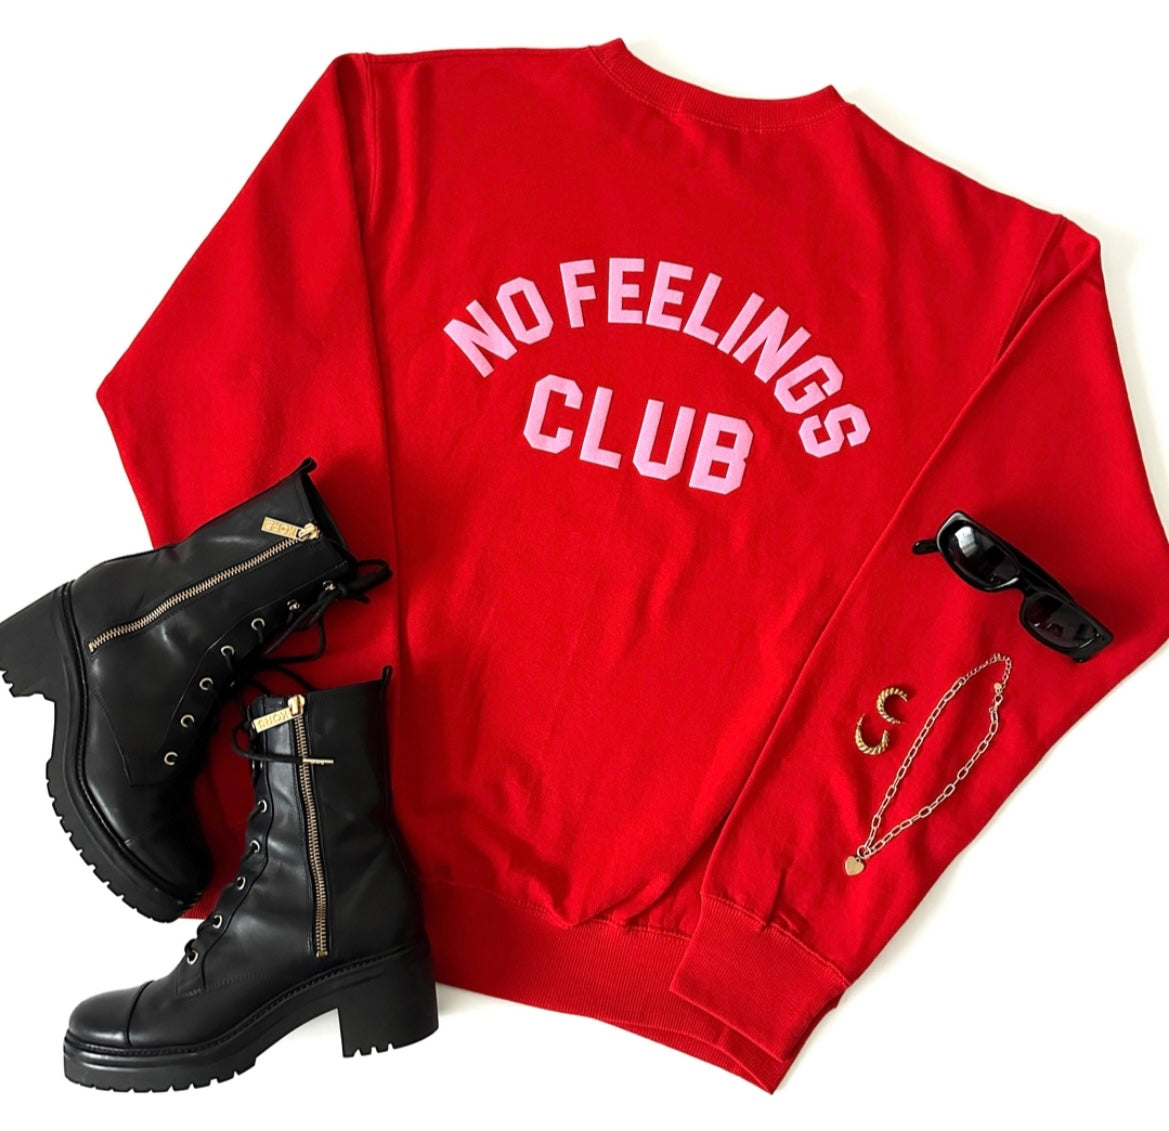 “No Feelings Club” Sweatshirt